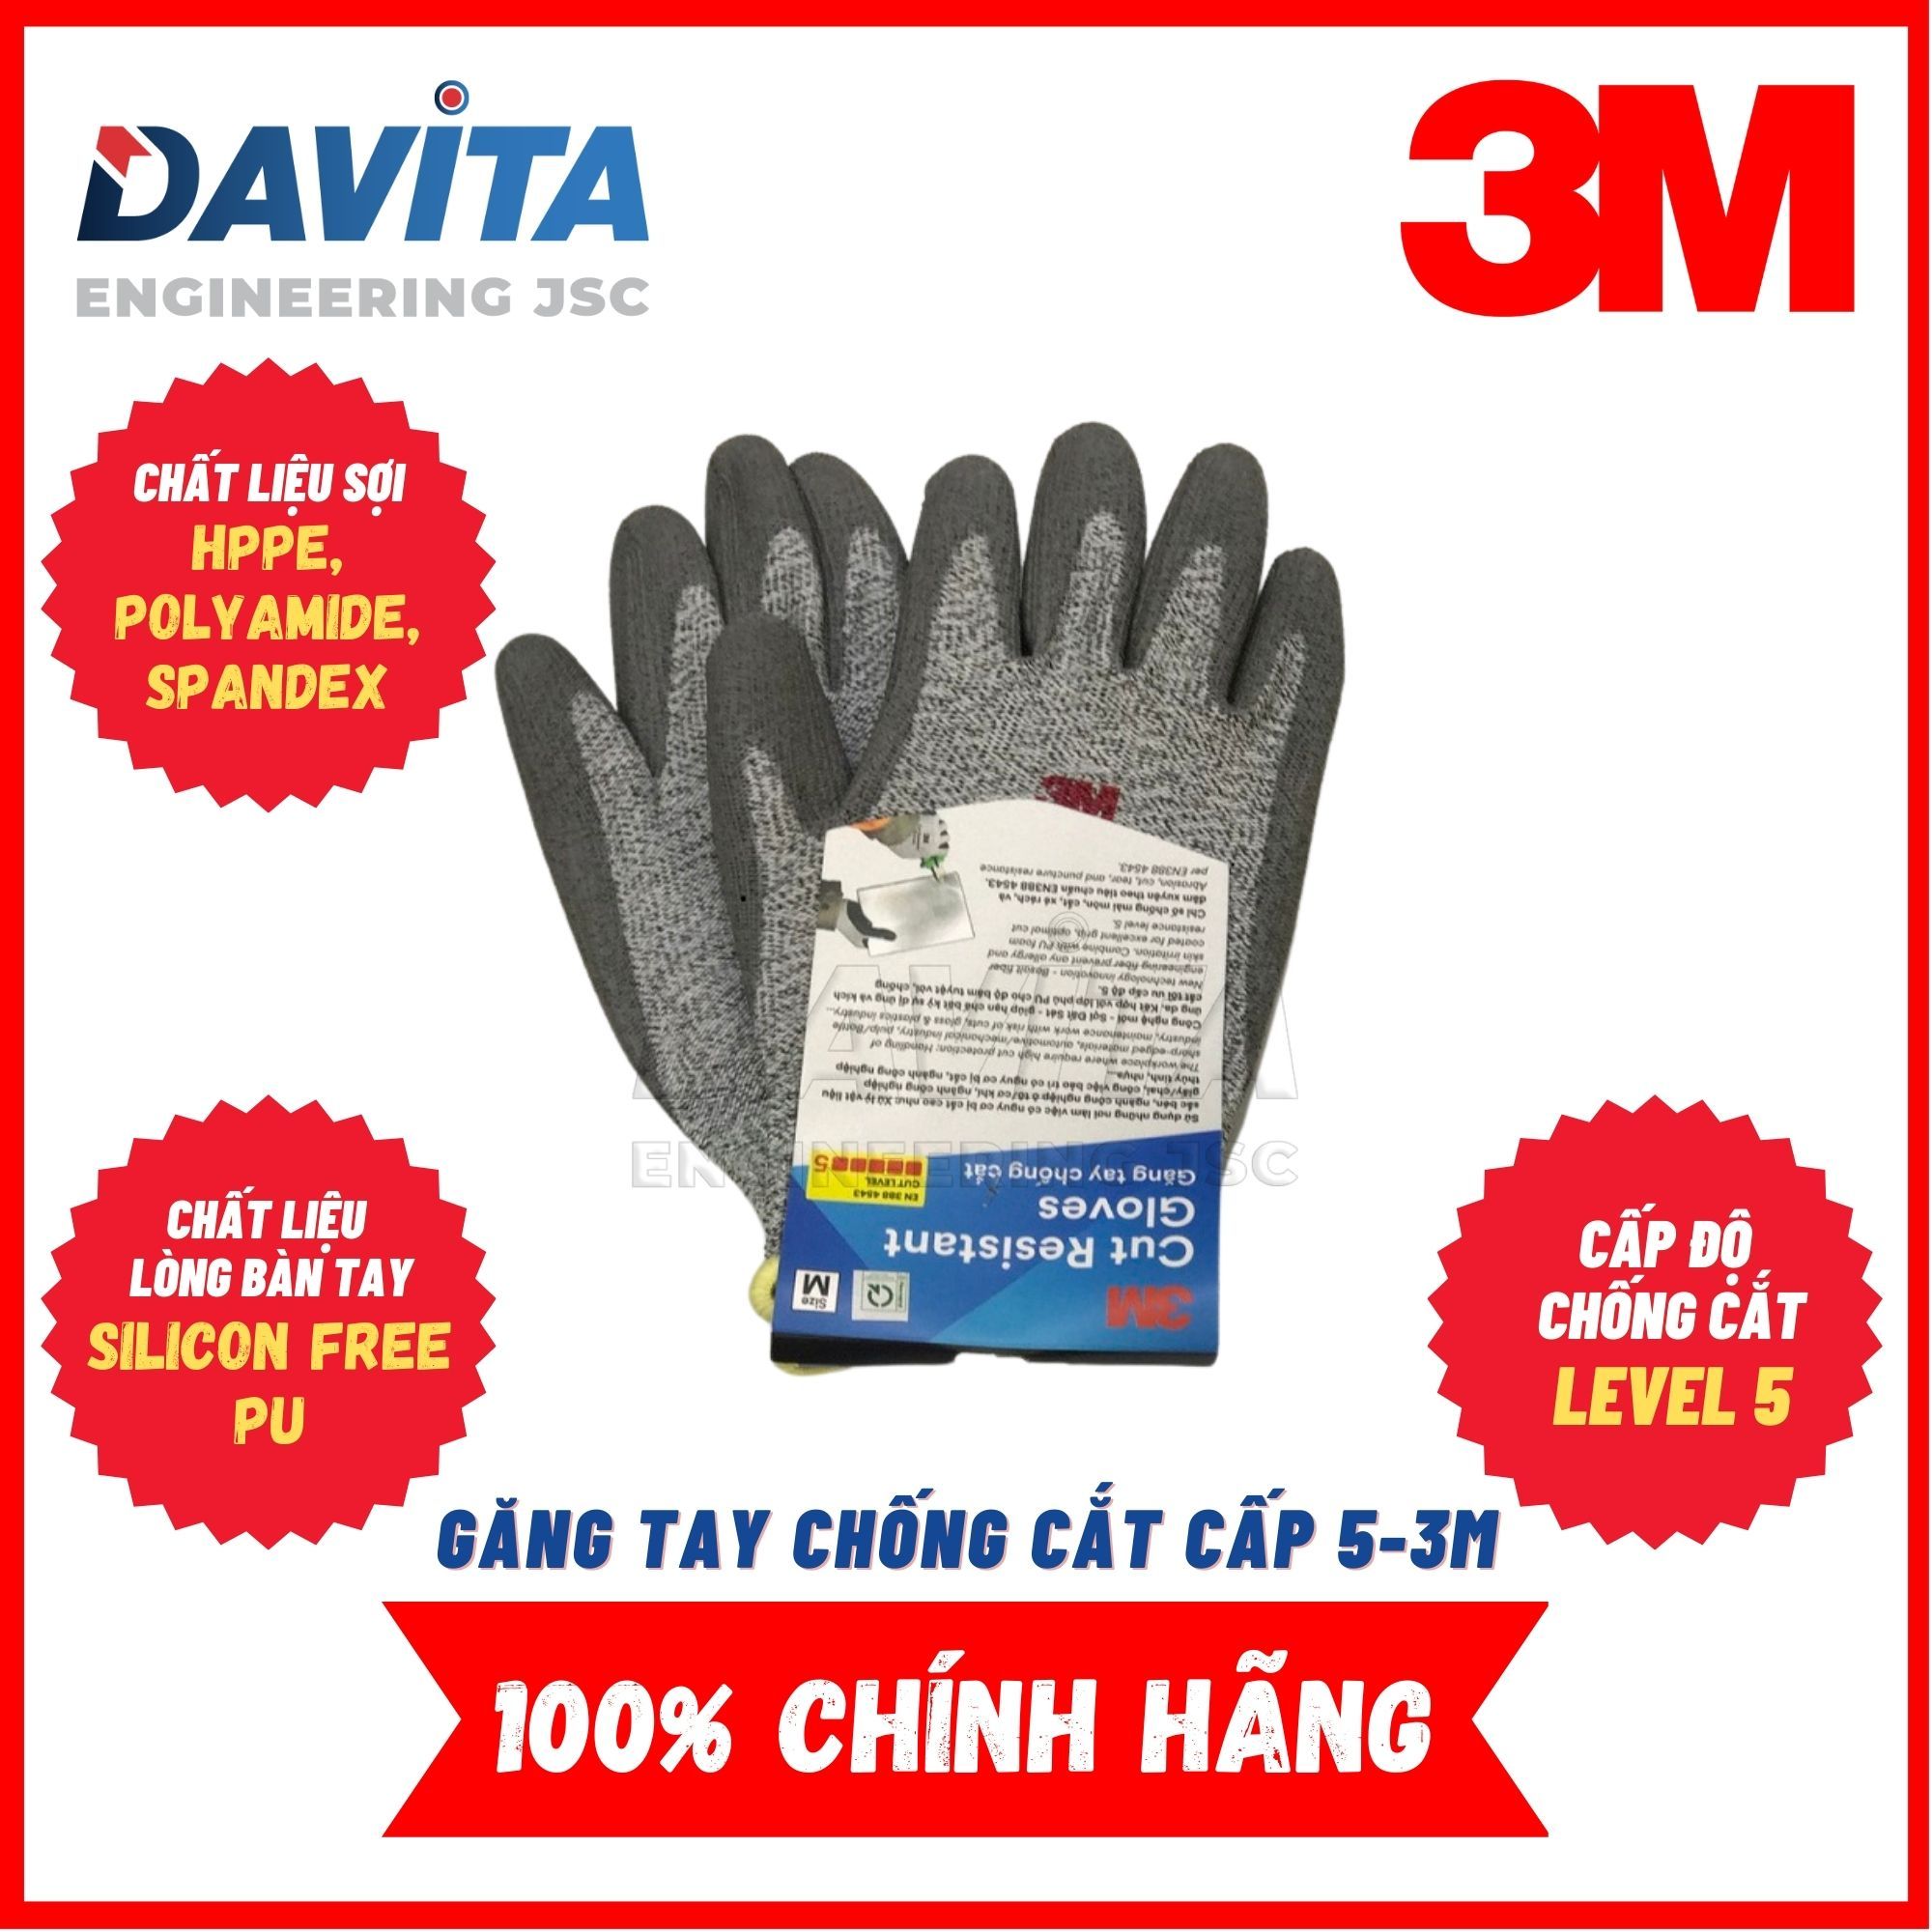 Găng tay chống cắt 3M cấp độ 5 màu xám trắng size L